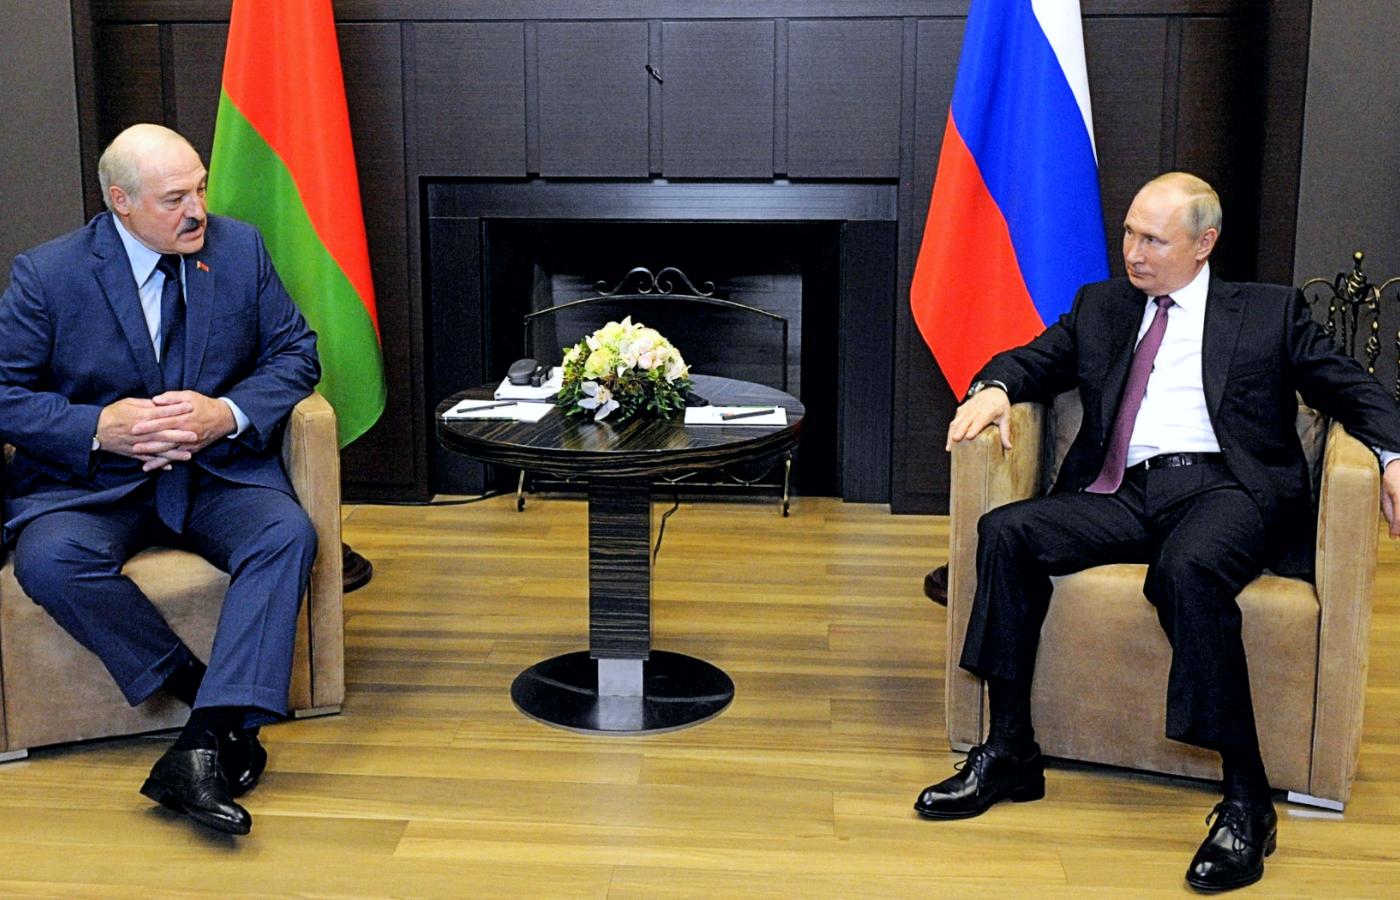 Władimir Putin przyjął Aleksandra Łukaszenkę 28 maja w swojej ulubionej czarnomorskiej rezydencji w Soczi.